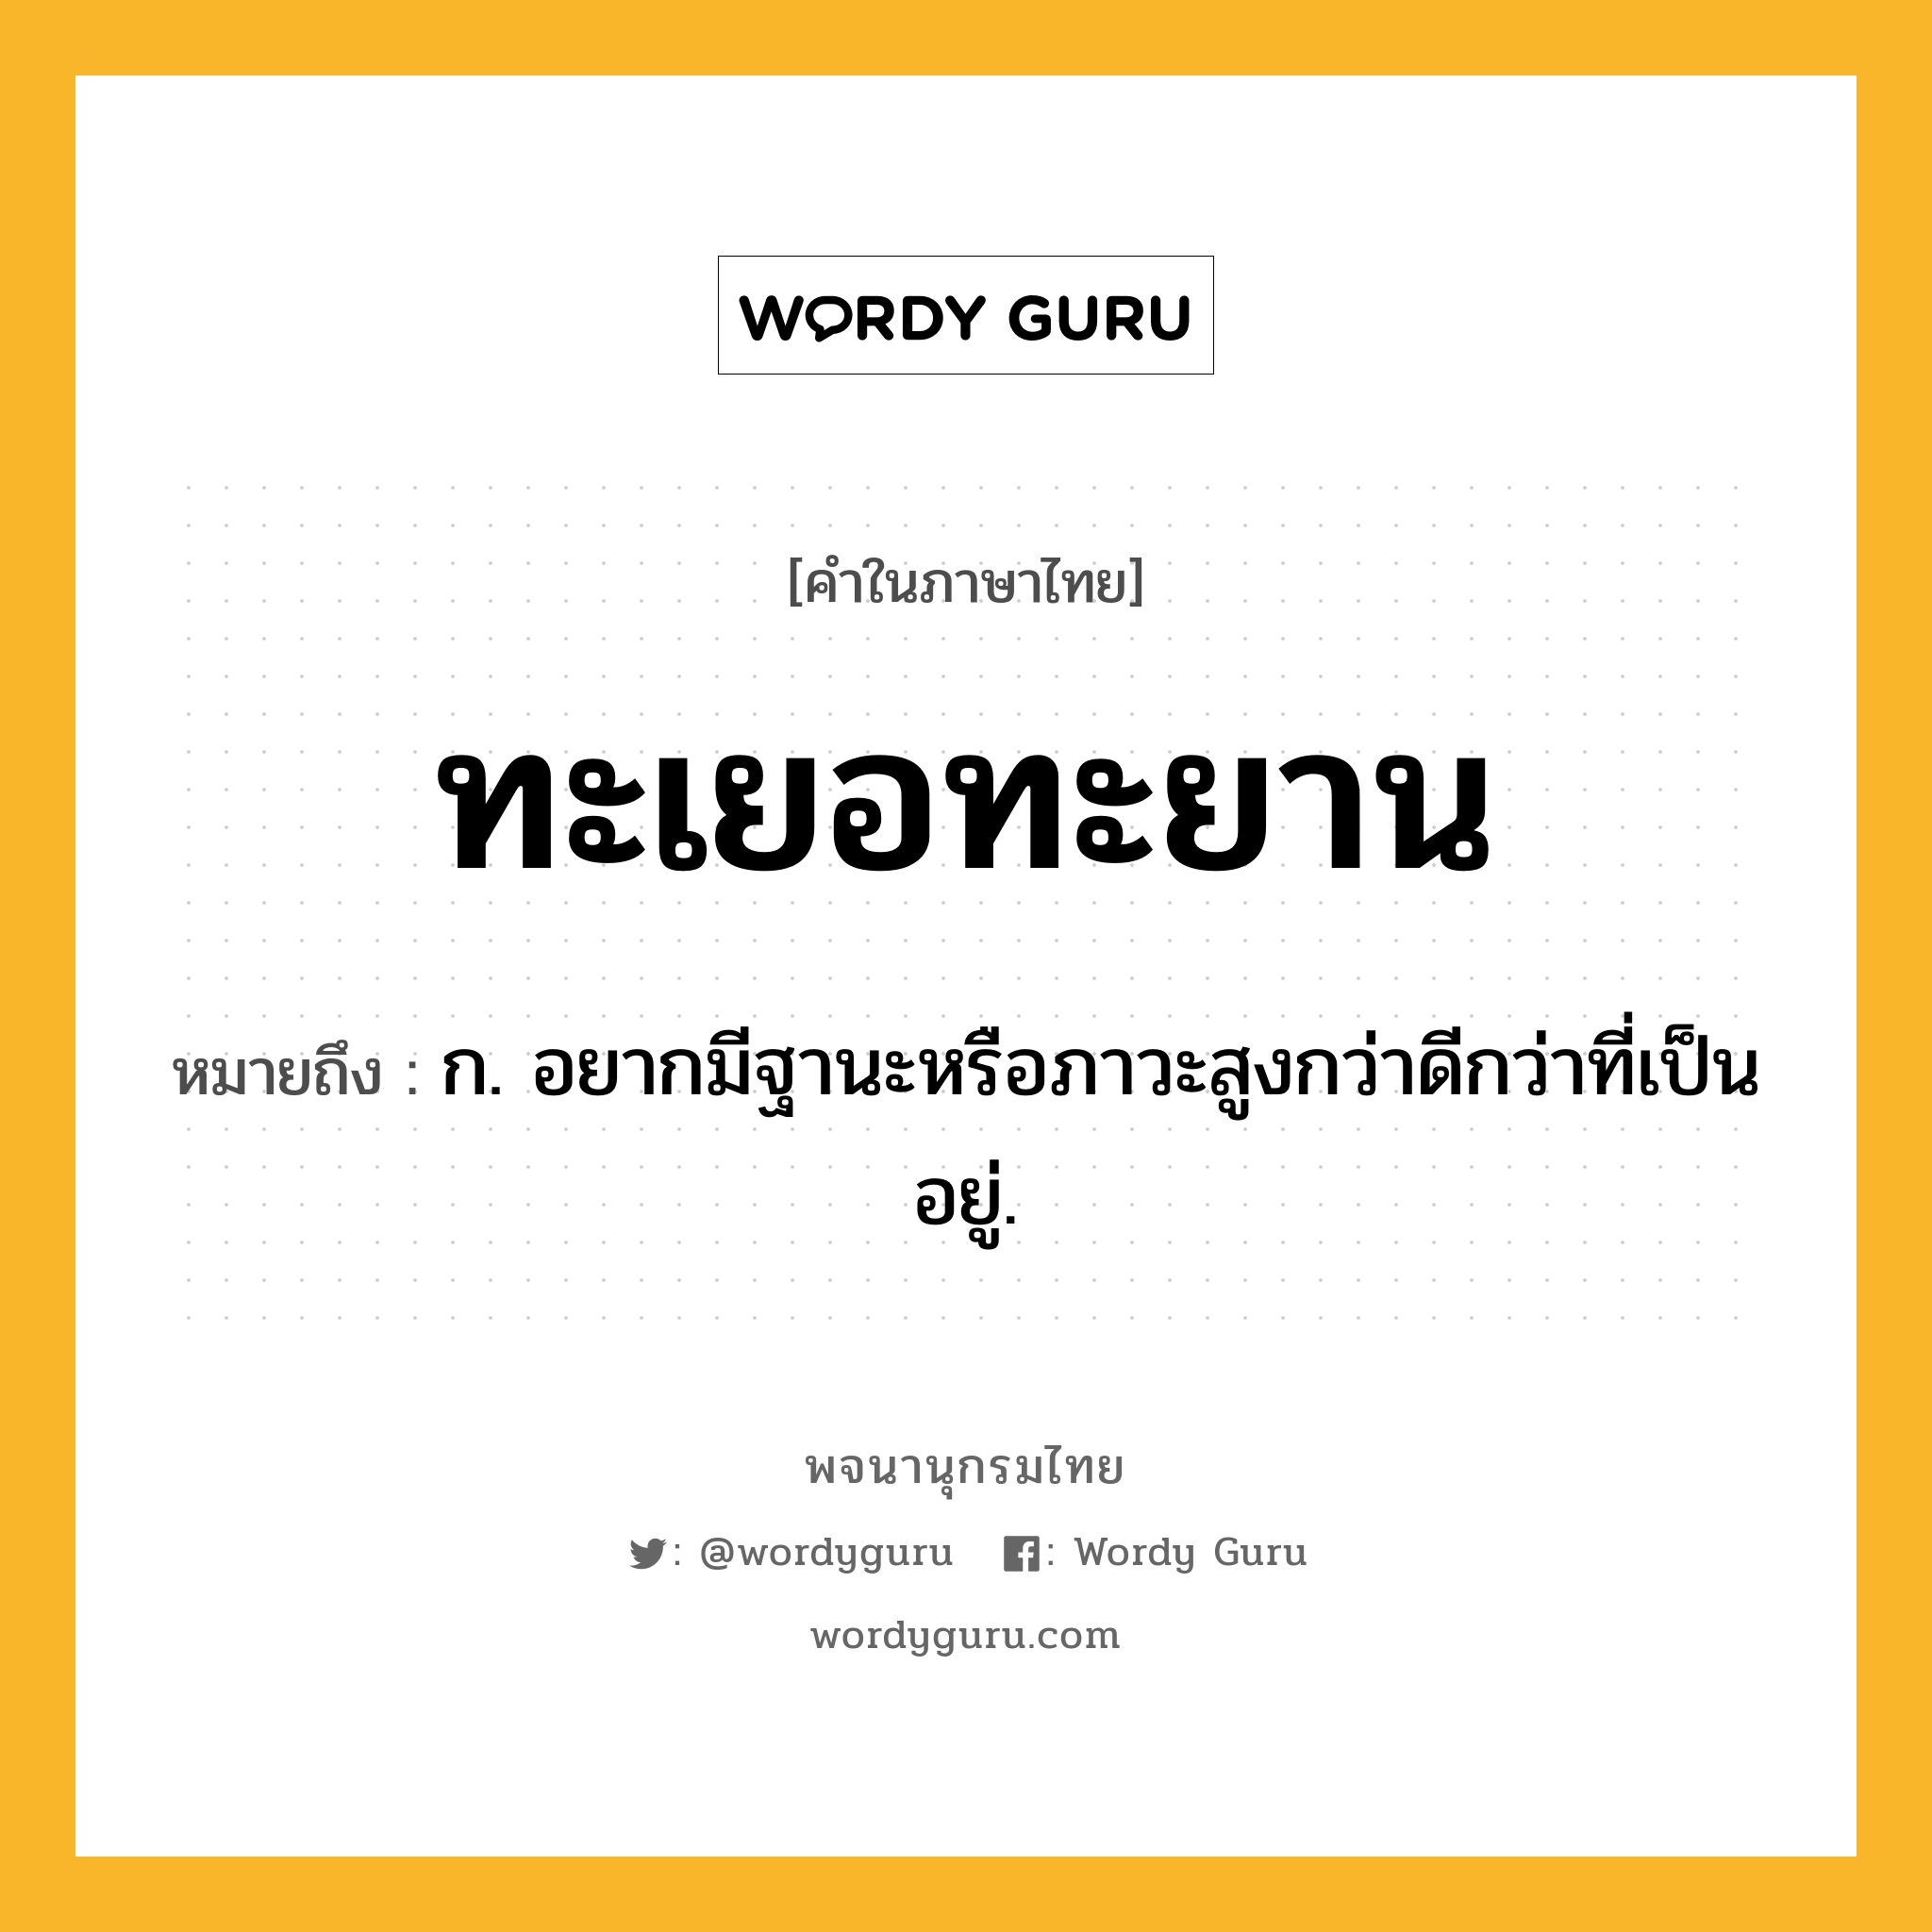 ทะเยอทะยาน หมายถึงอะไร?, คำในภาษาไทย ทะเยอทะยาน หมายถึง ก. อยากมีฐานะหรือภาวะสูงกว่าดีกว่าที่เป็นอยู่.